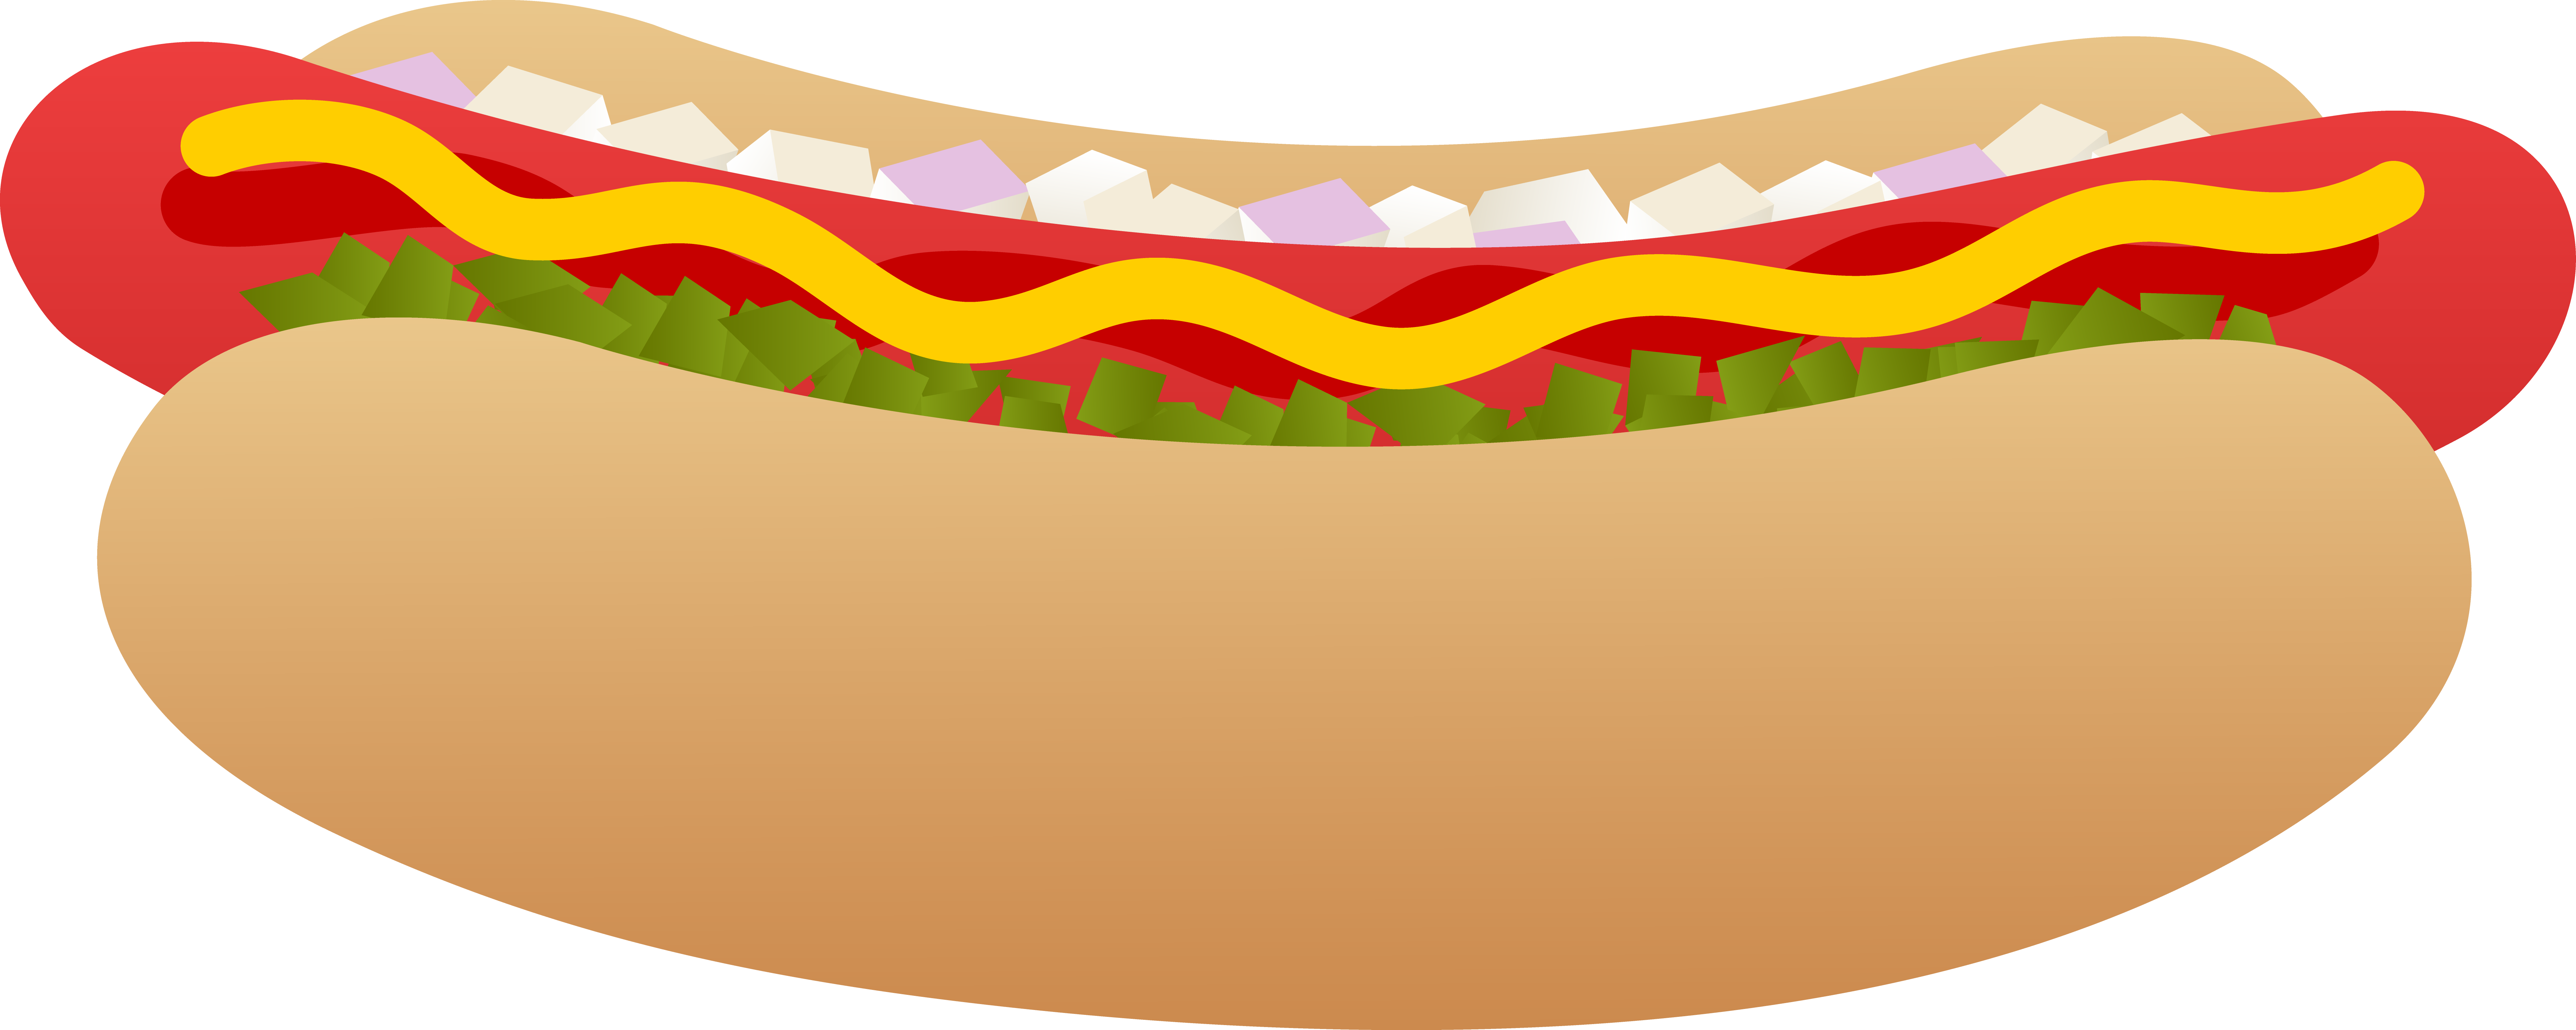 Clipart hot dog dog